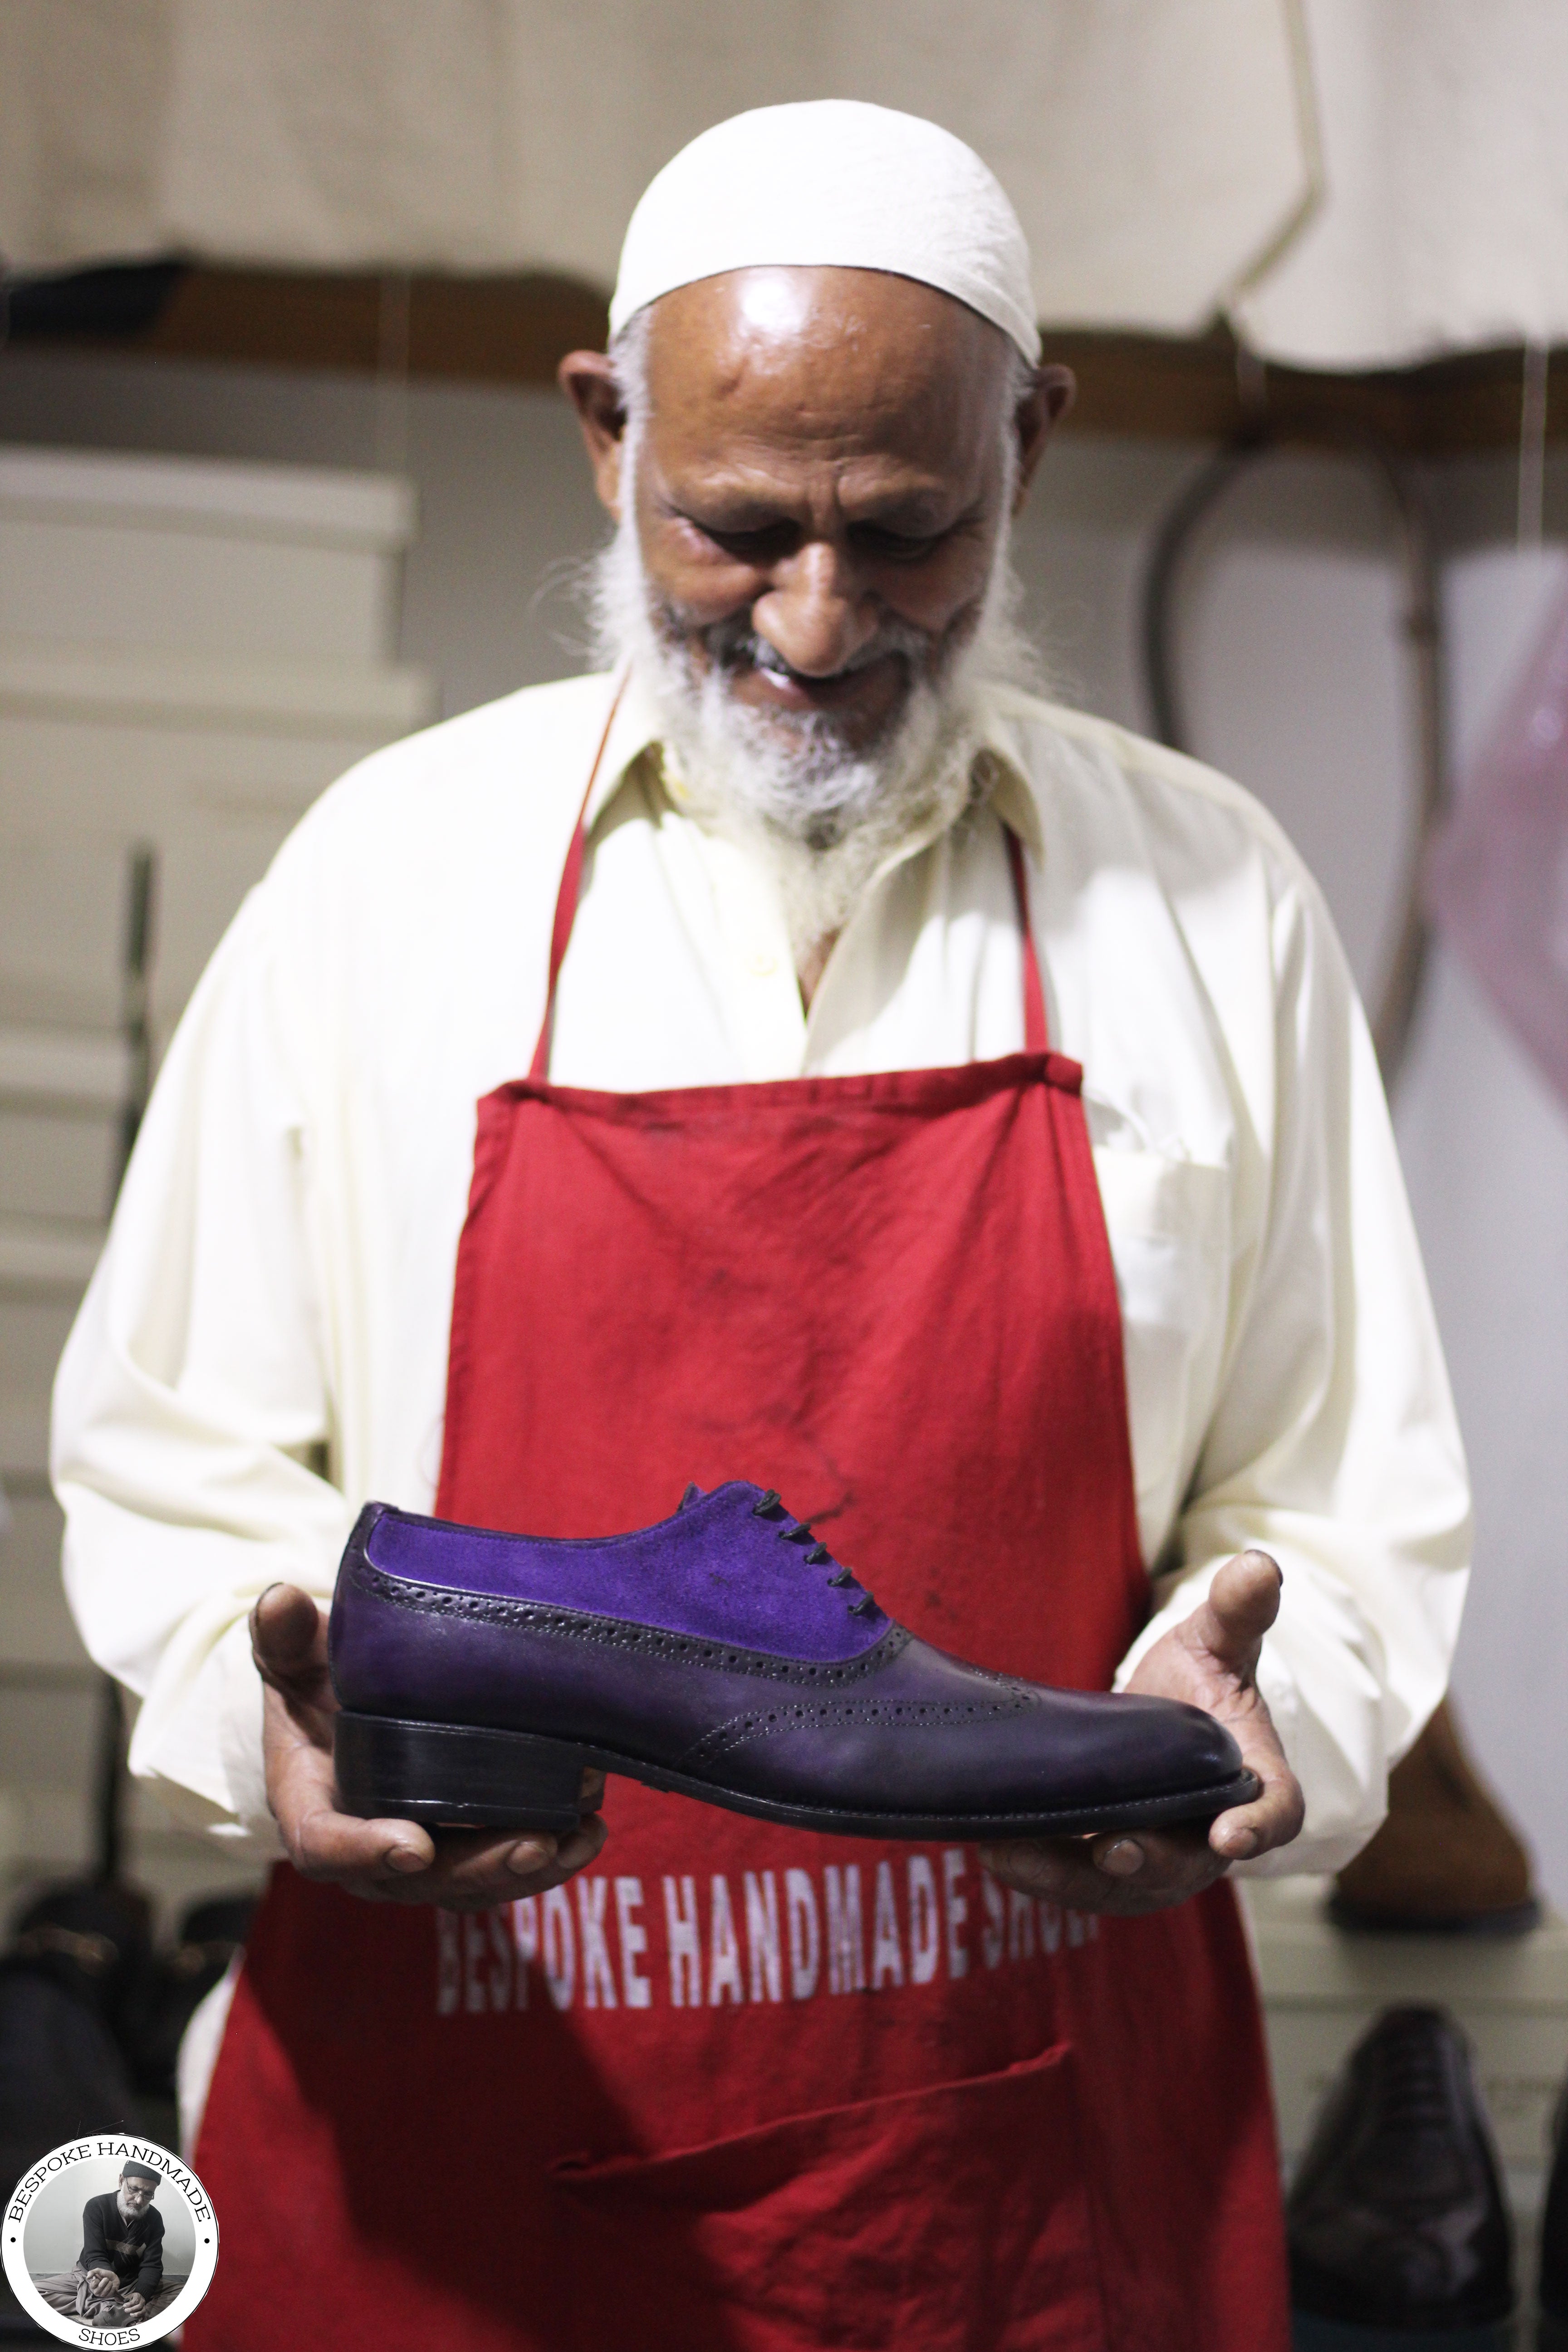 Handmade Men's Purple Leather & Suede Oxford Whole Cut Wingtip Dress shoes, Men Lace Up Shoes